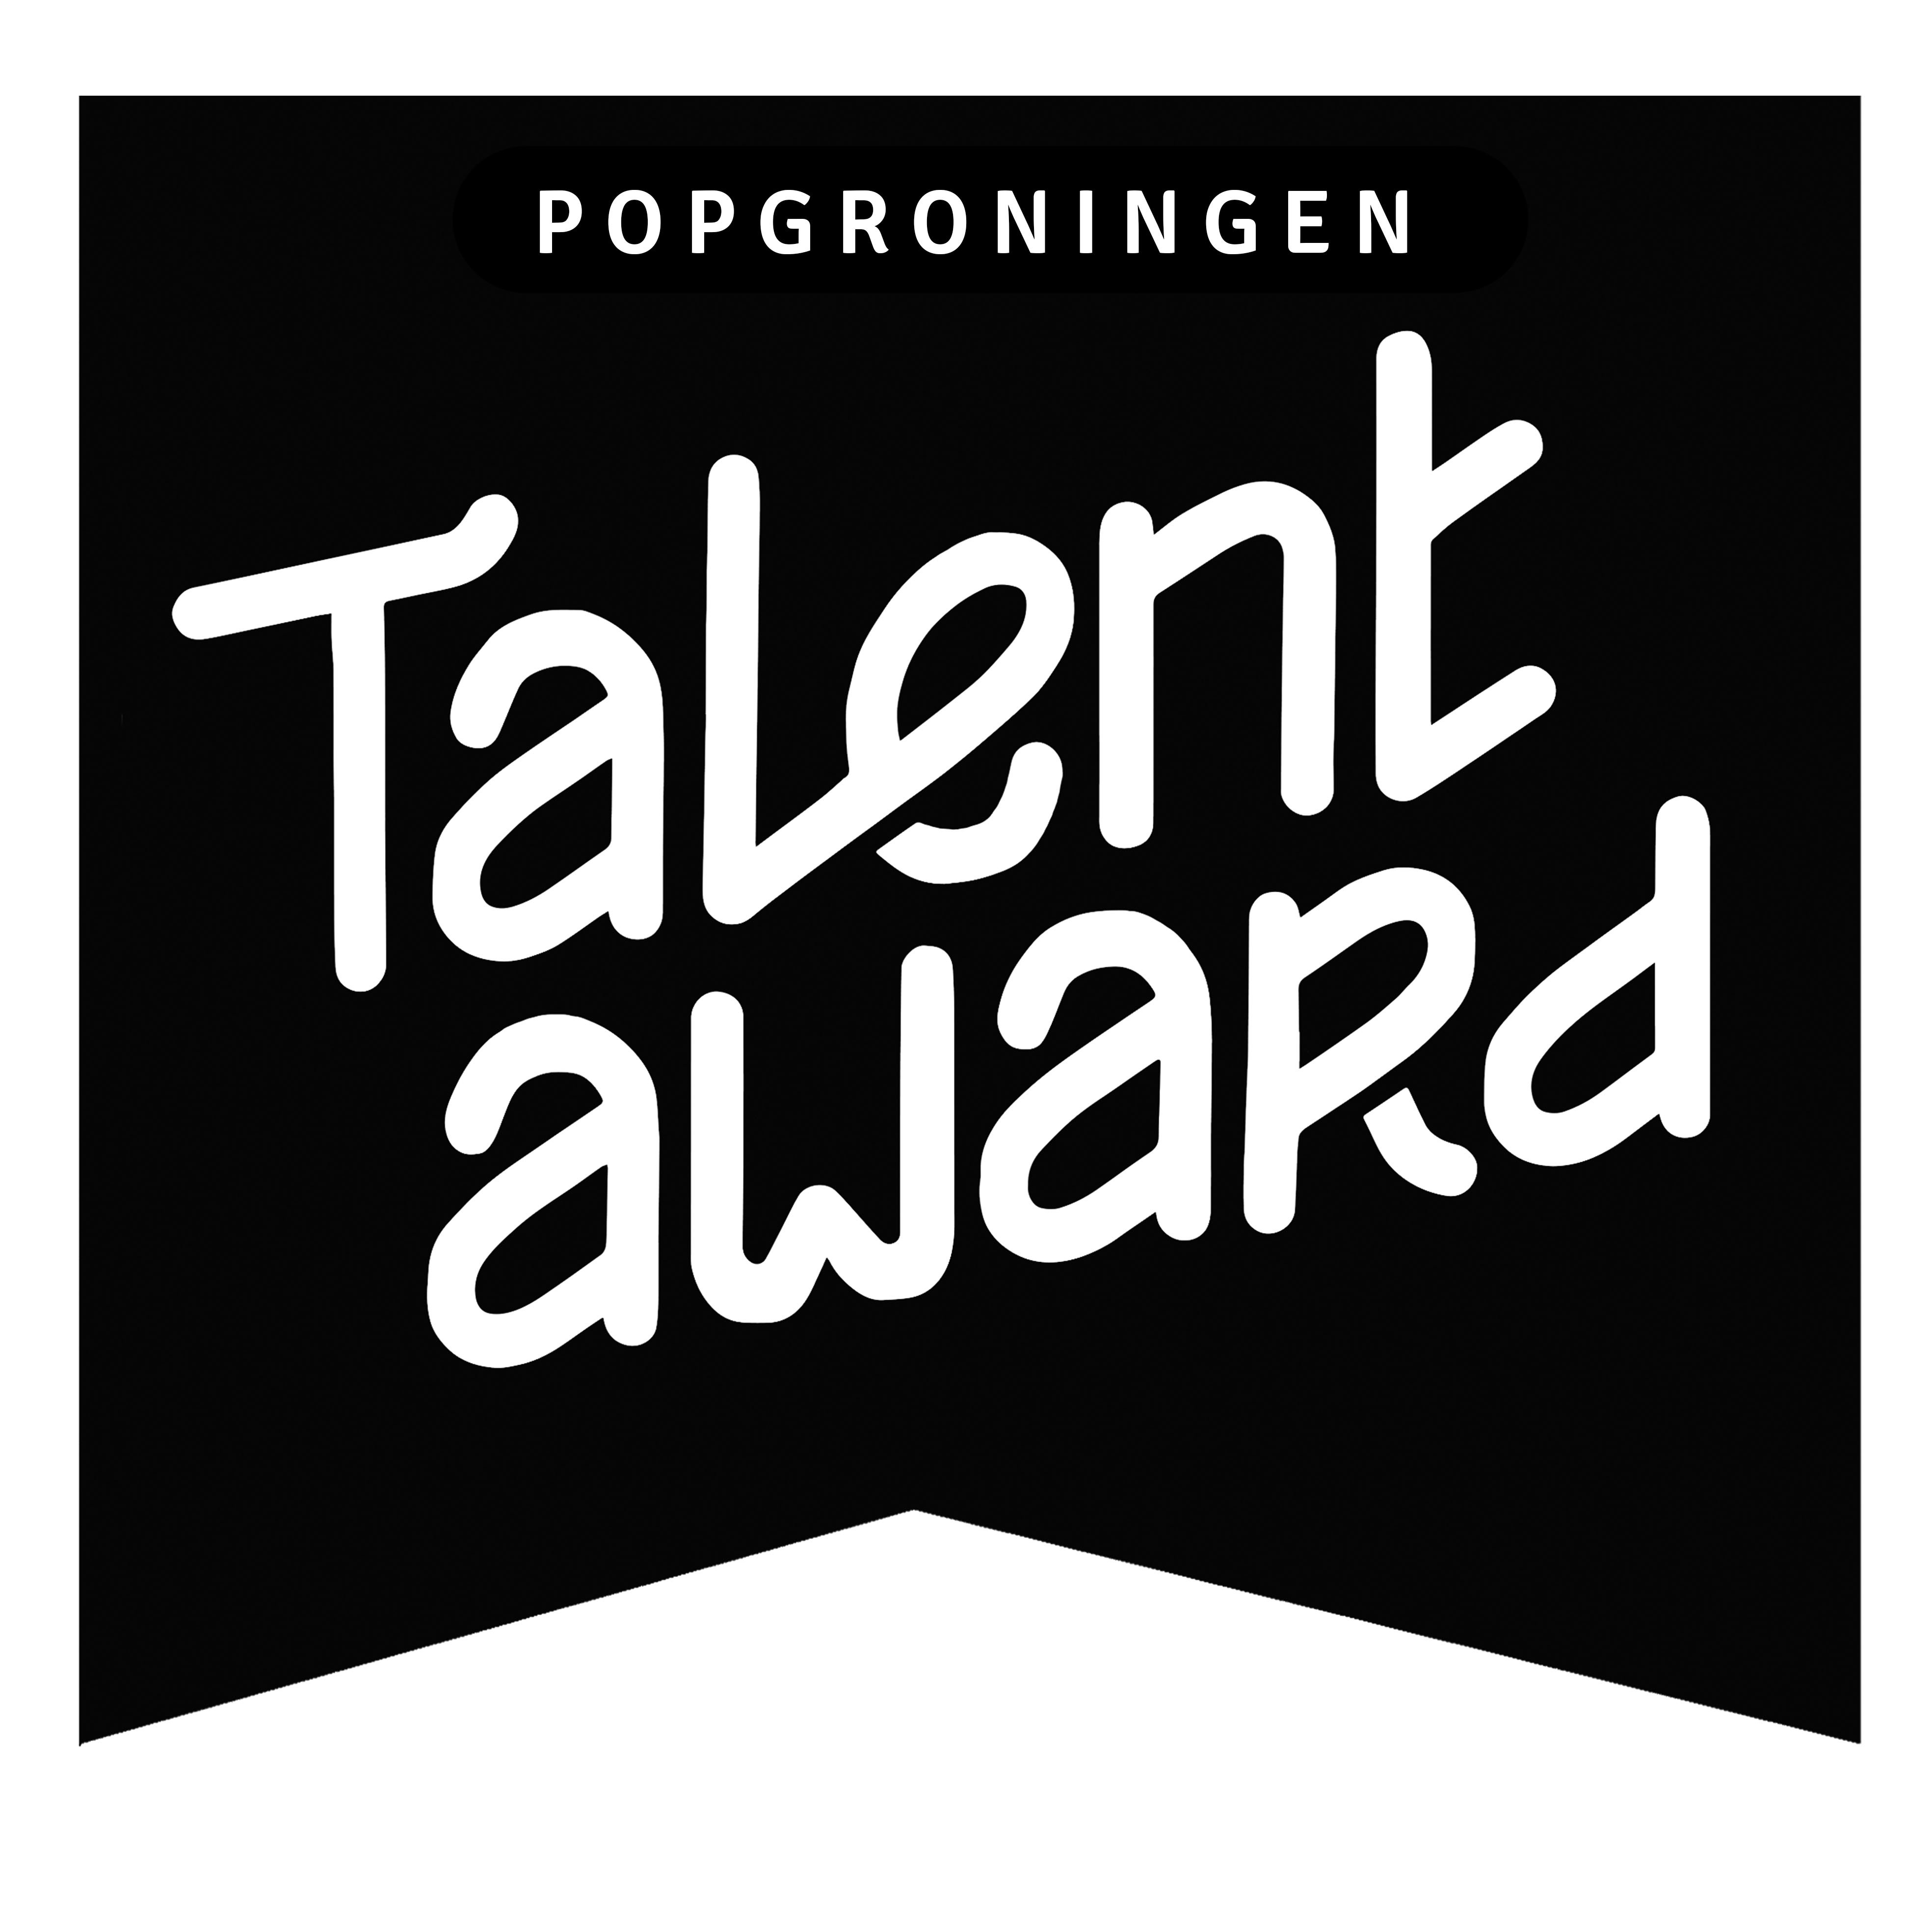 Voorronde POPgroningen Talent Award!